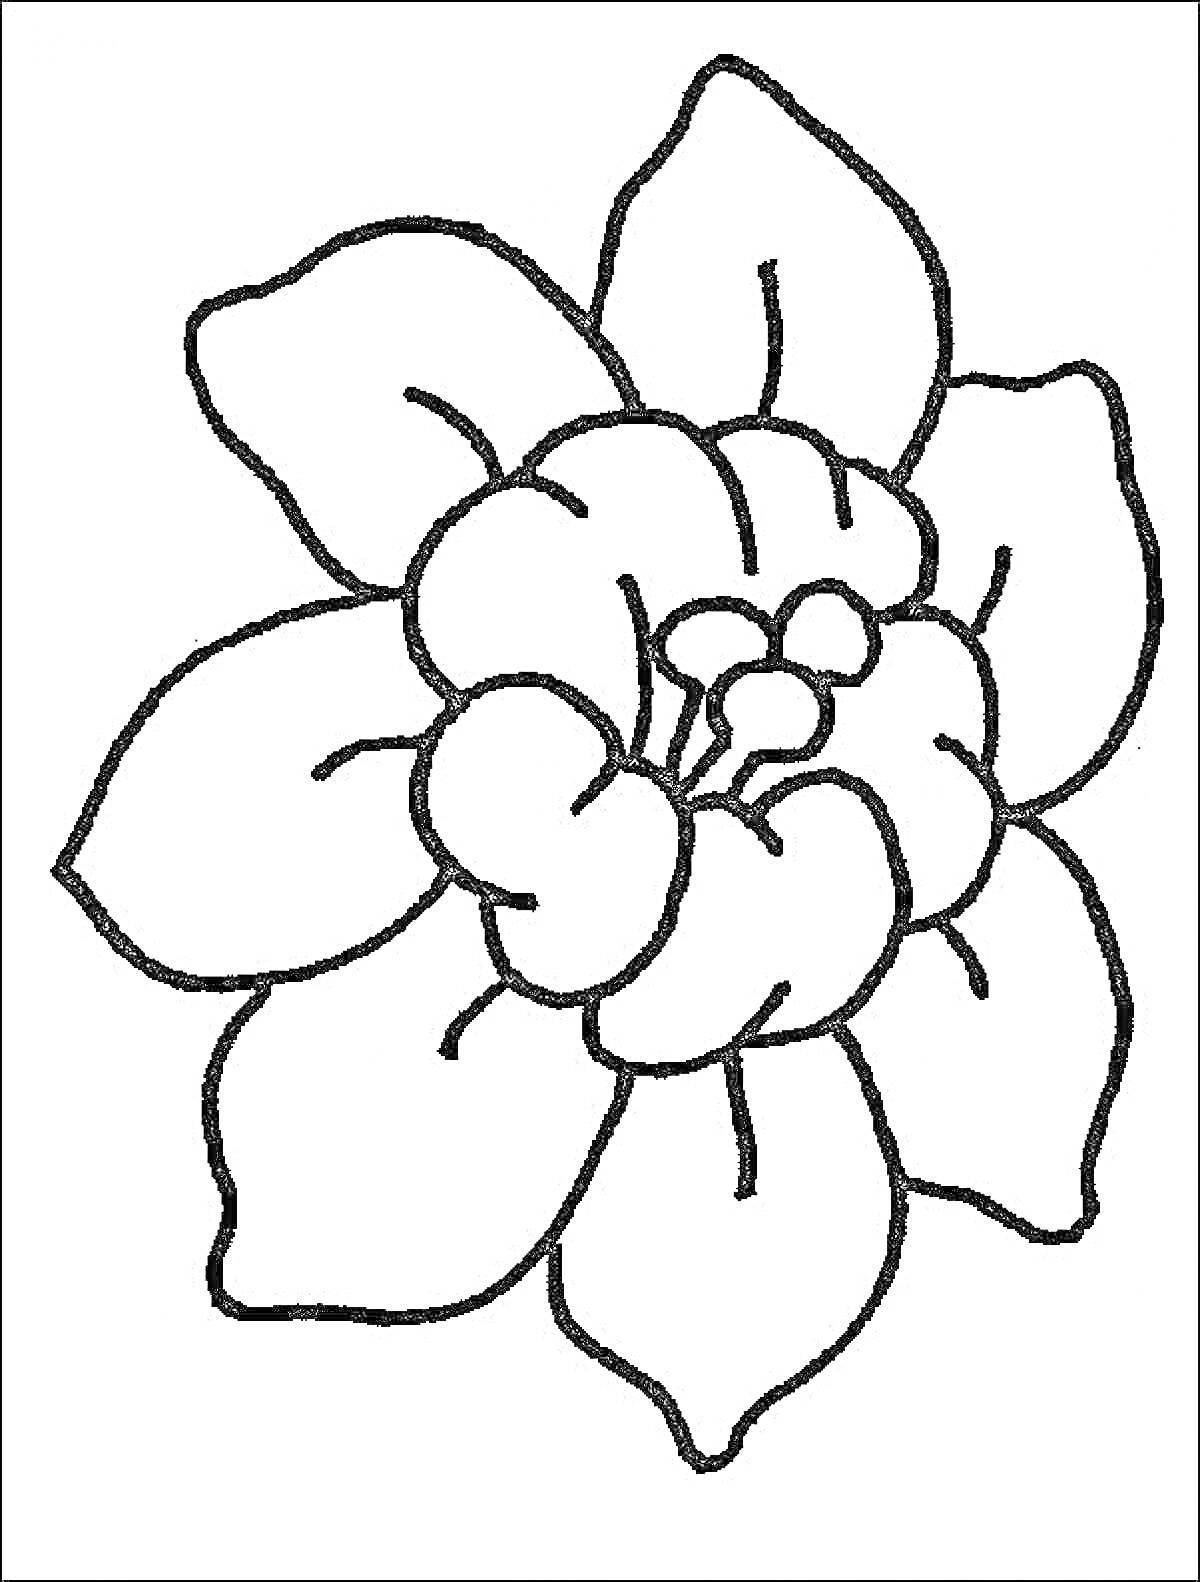 Раскраска с изображением цветка с семью лепестками и бутоном в центре